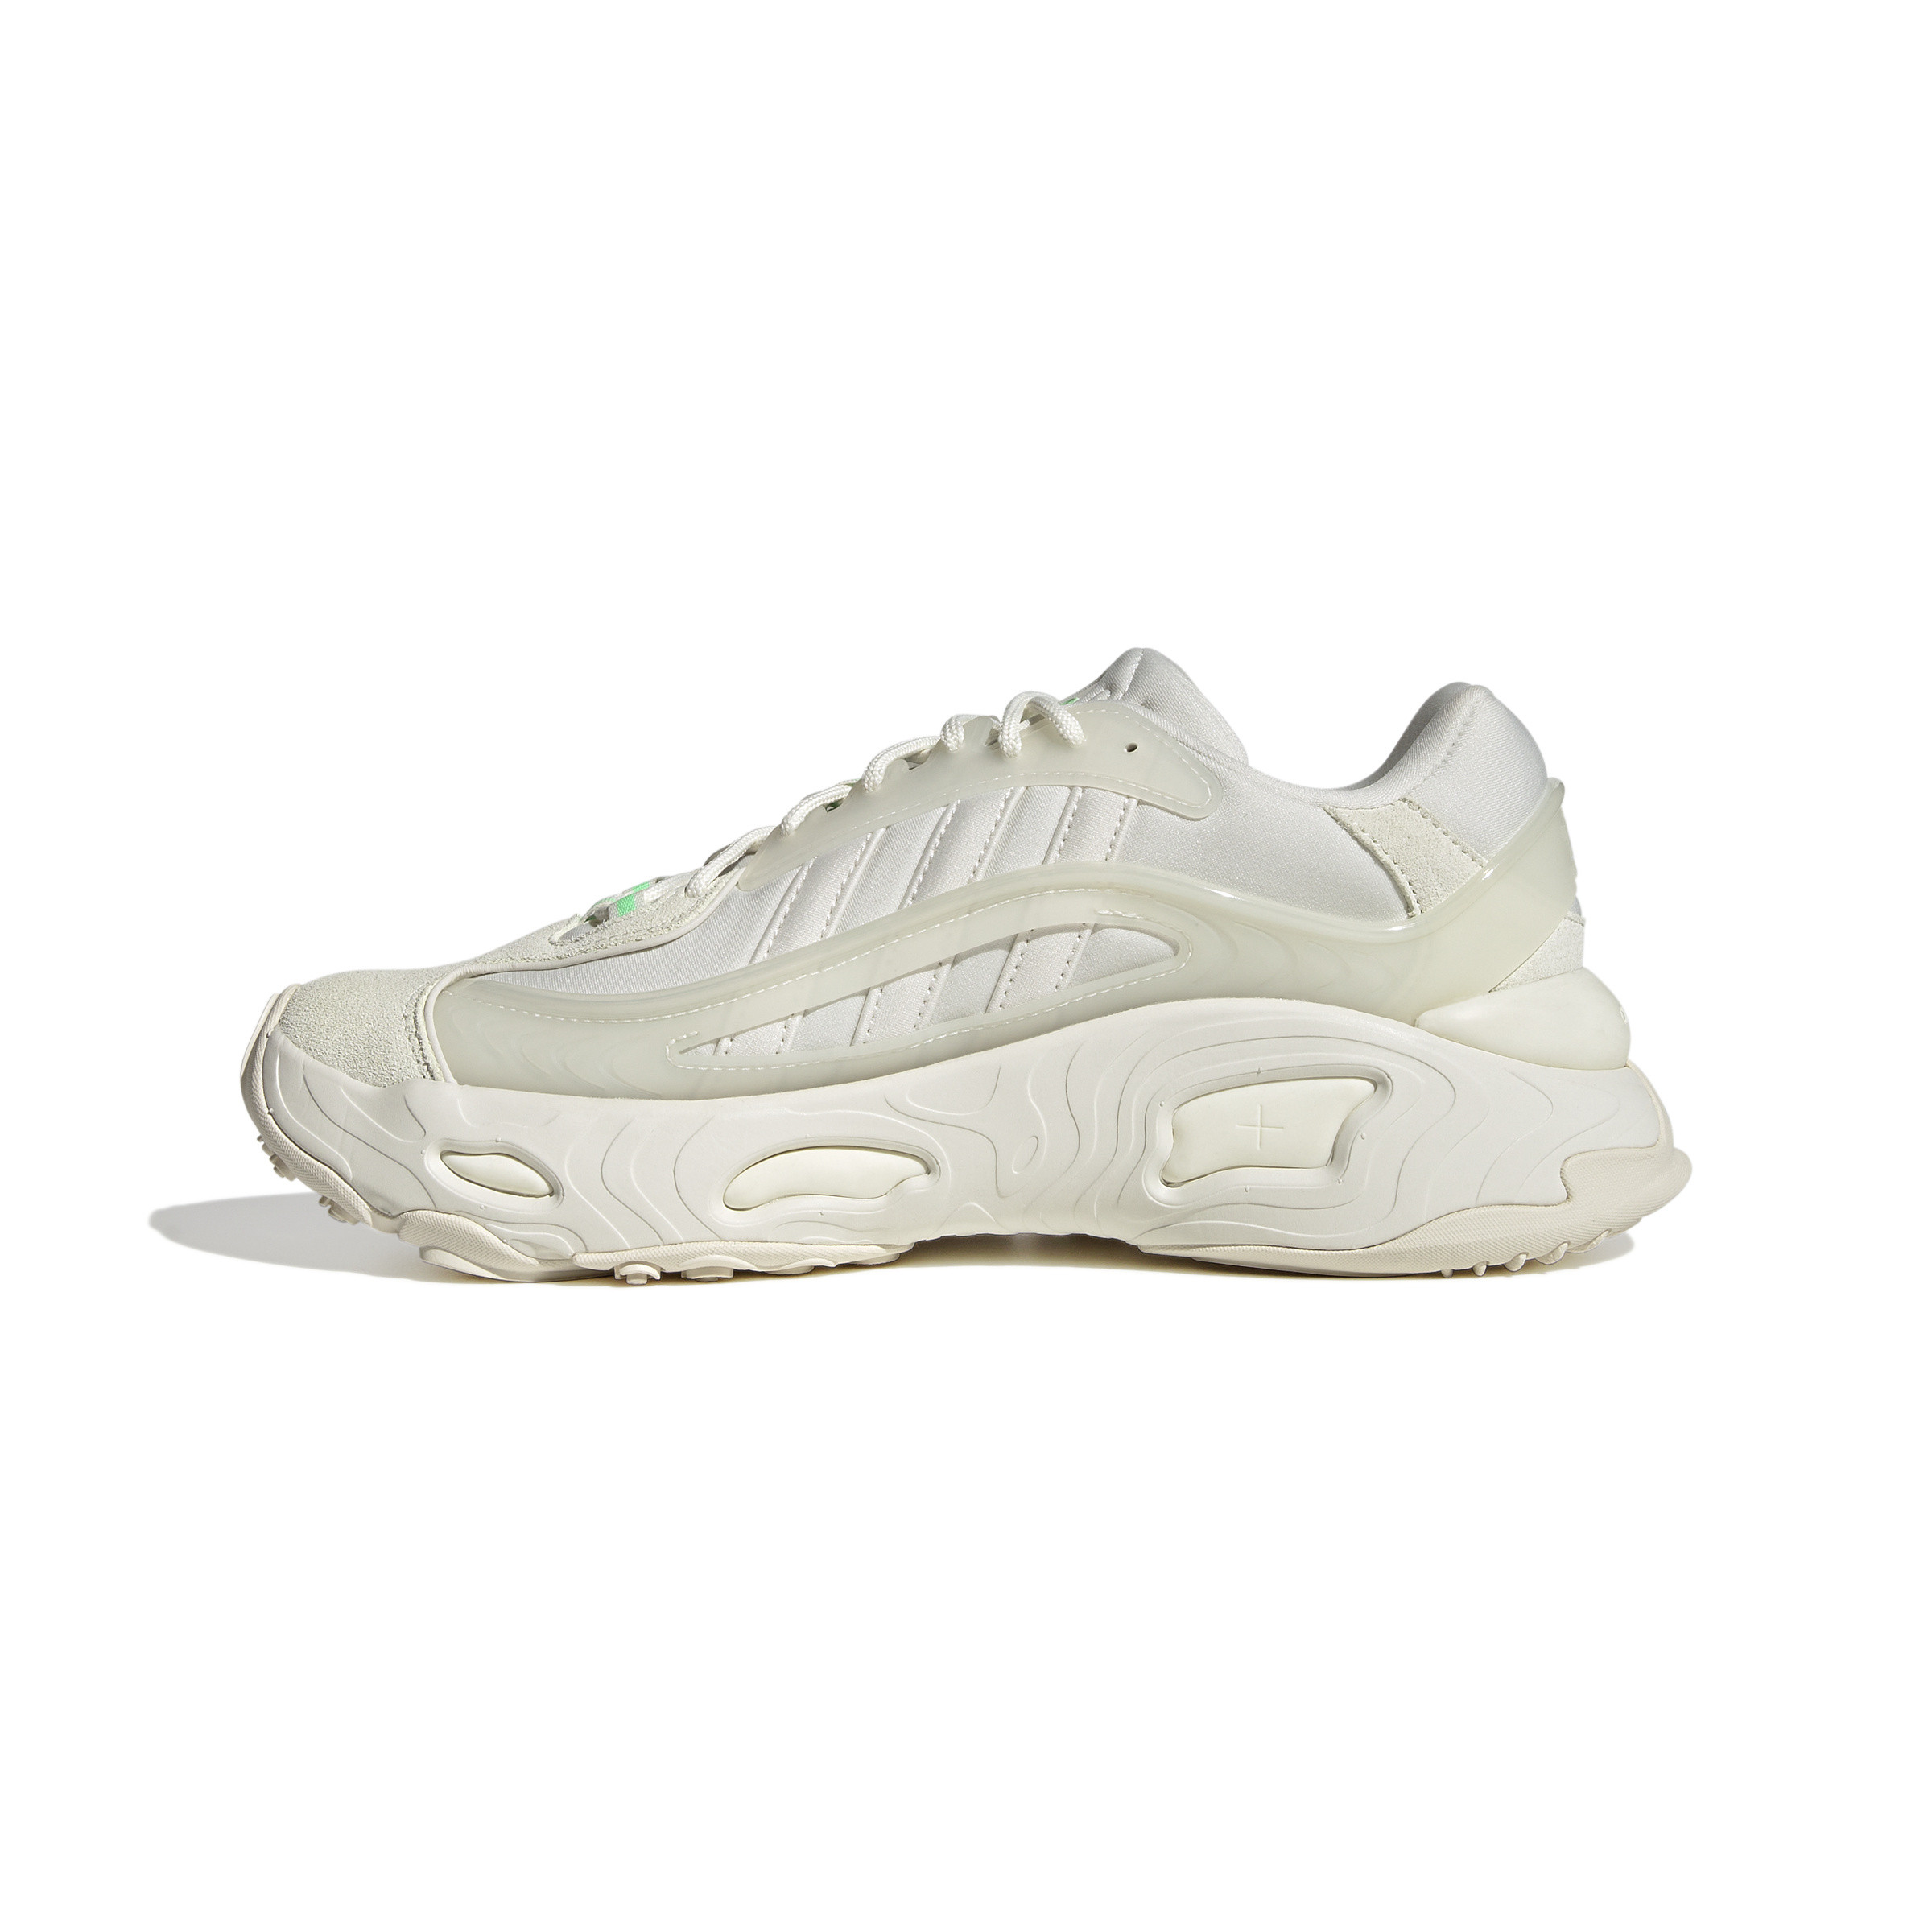 Adidas - Scarpe Oznova, Bianco, large image number 3